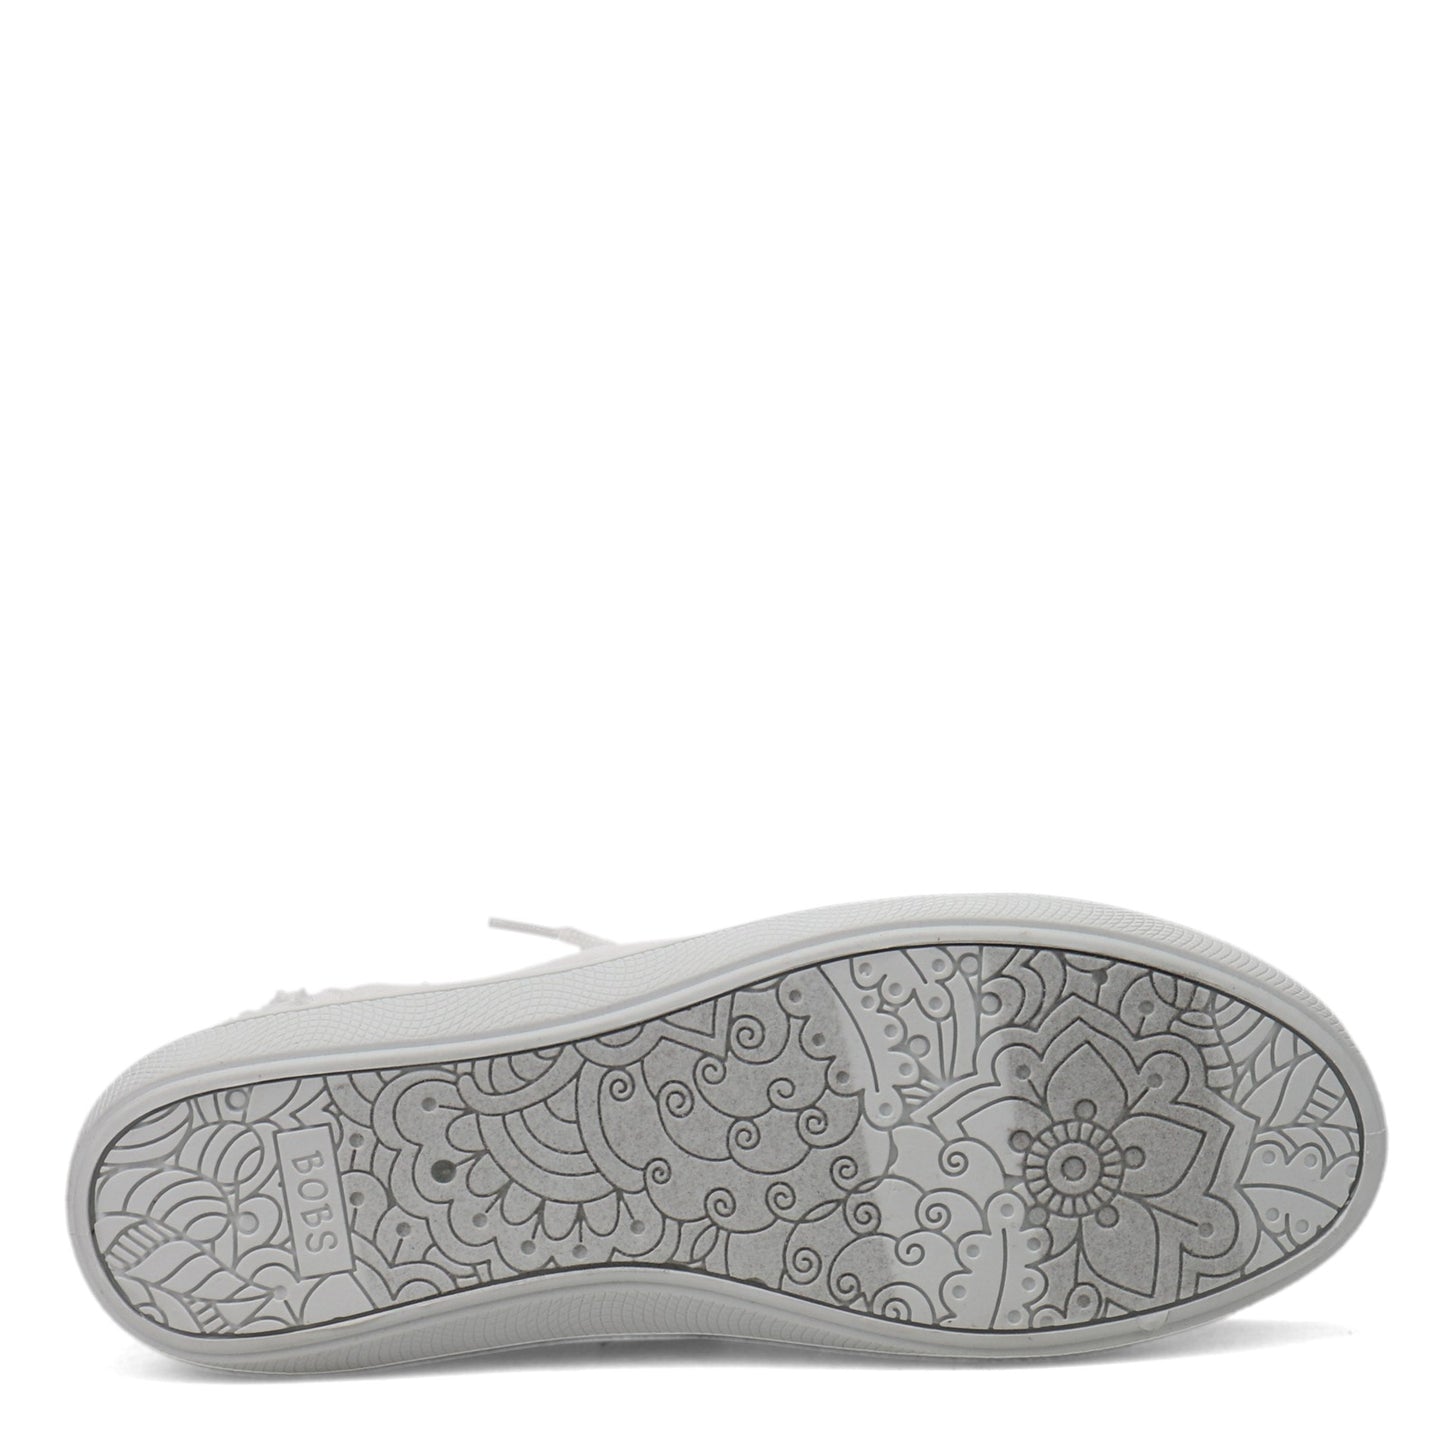 Peltz Shoes  Women's Skechers BOBS B Cute Sneaker WHITE 33492-WHT